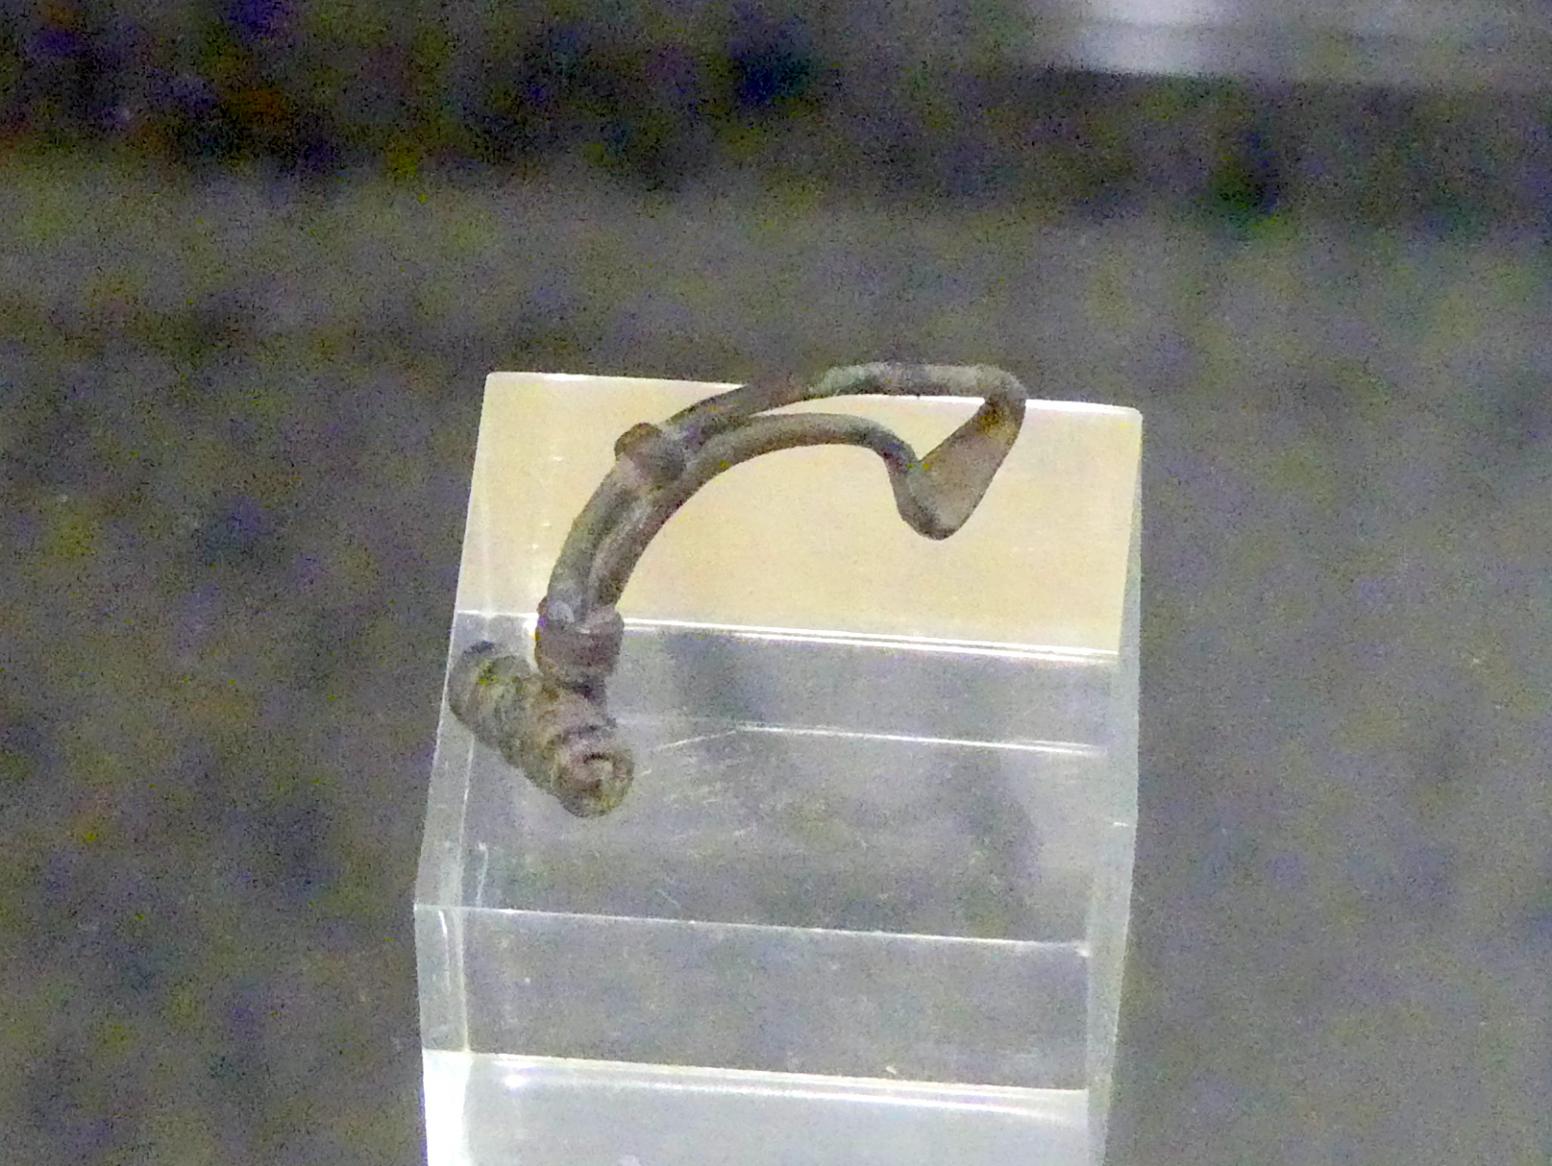 Spätkeltisch-germanische Fibel, Spätlatènezeit D2, 700 - 100 v. Chr., Bild 1/3